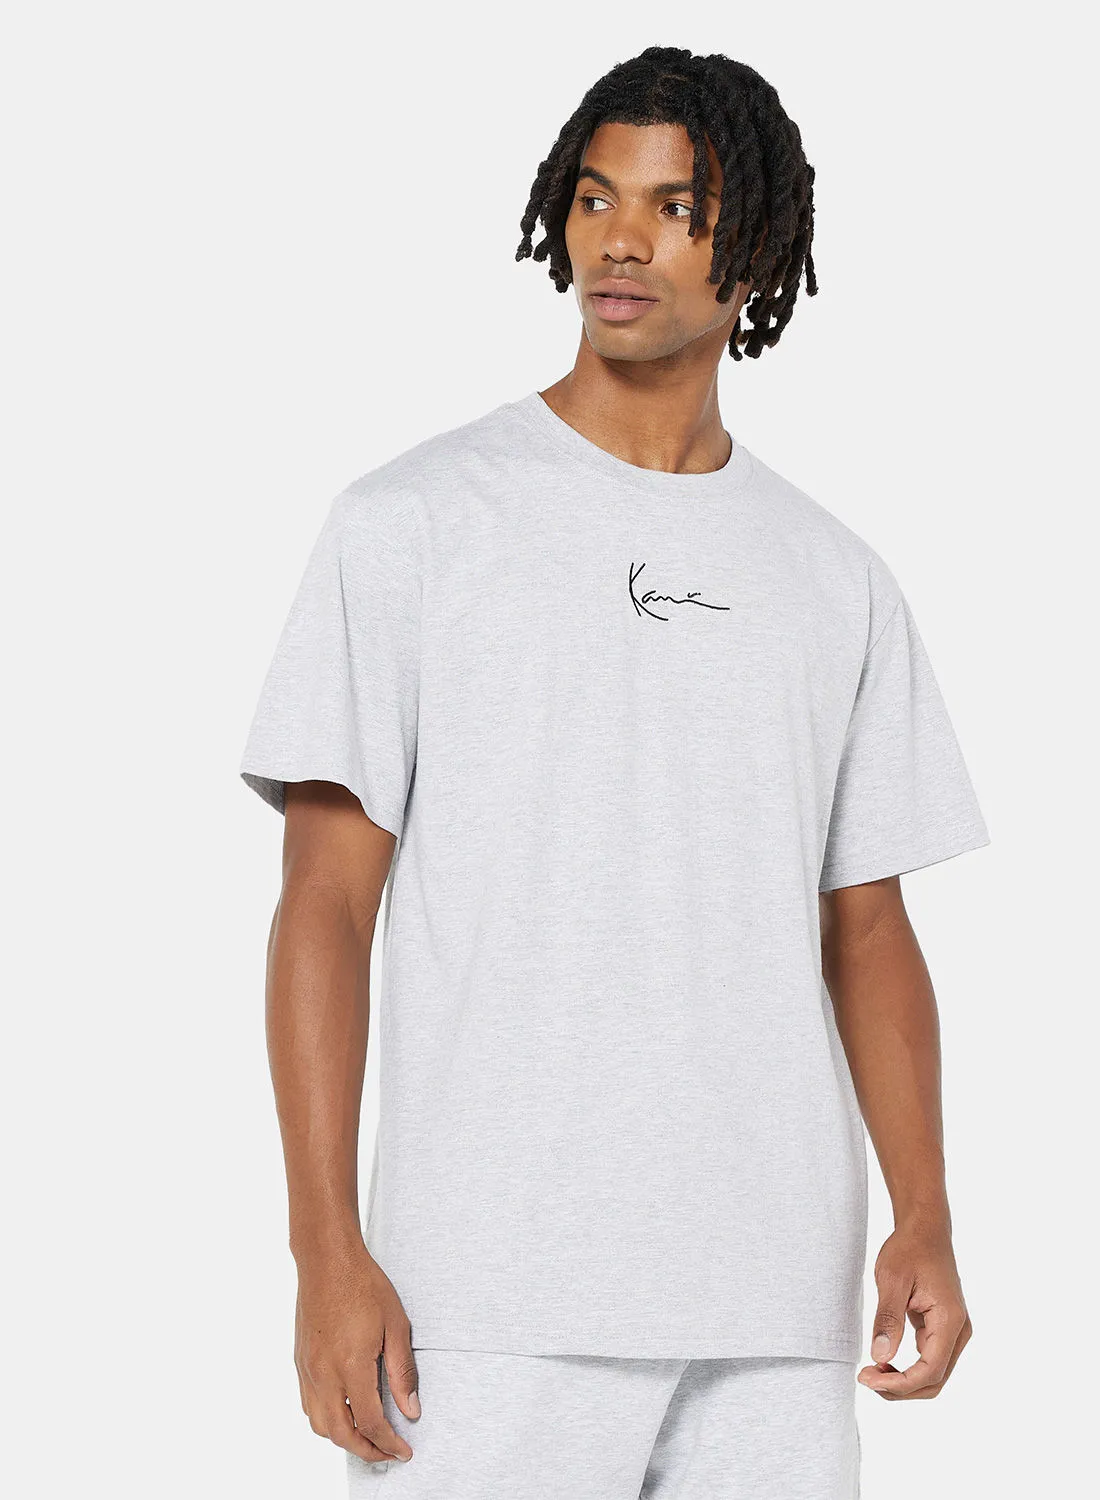 Karl Kani Small Signature T-Shirt Grey